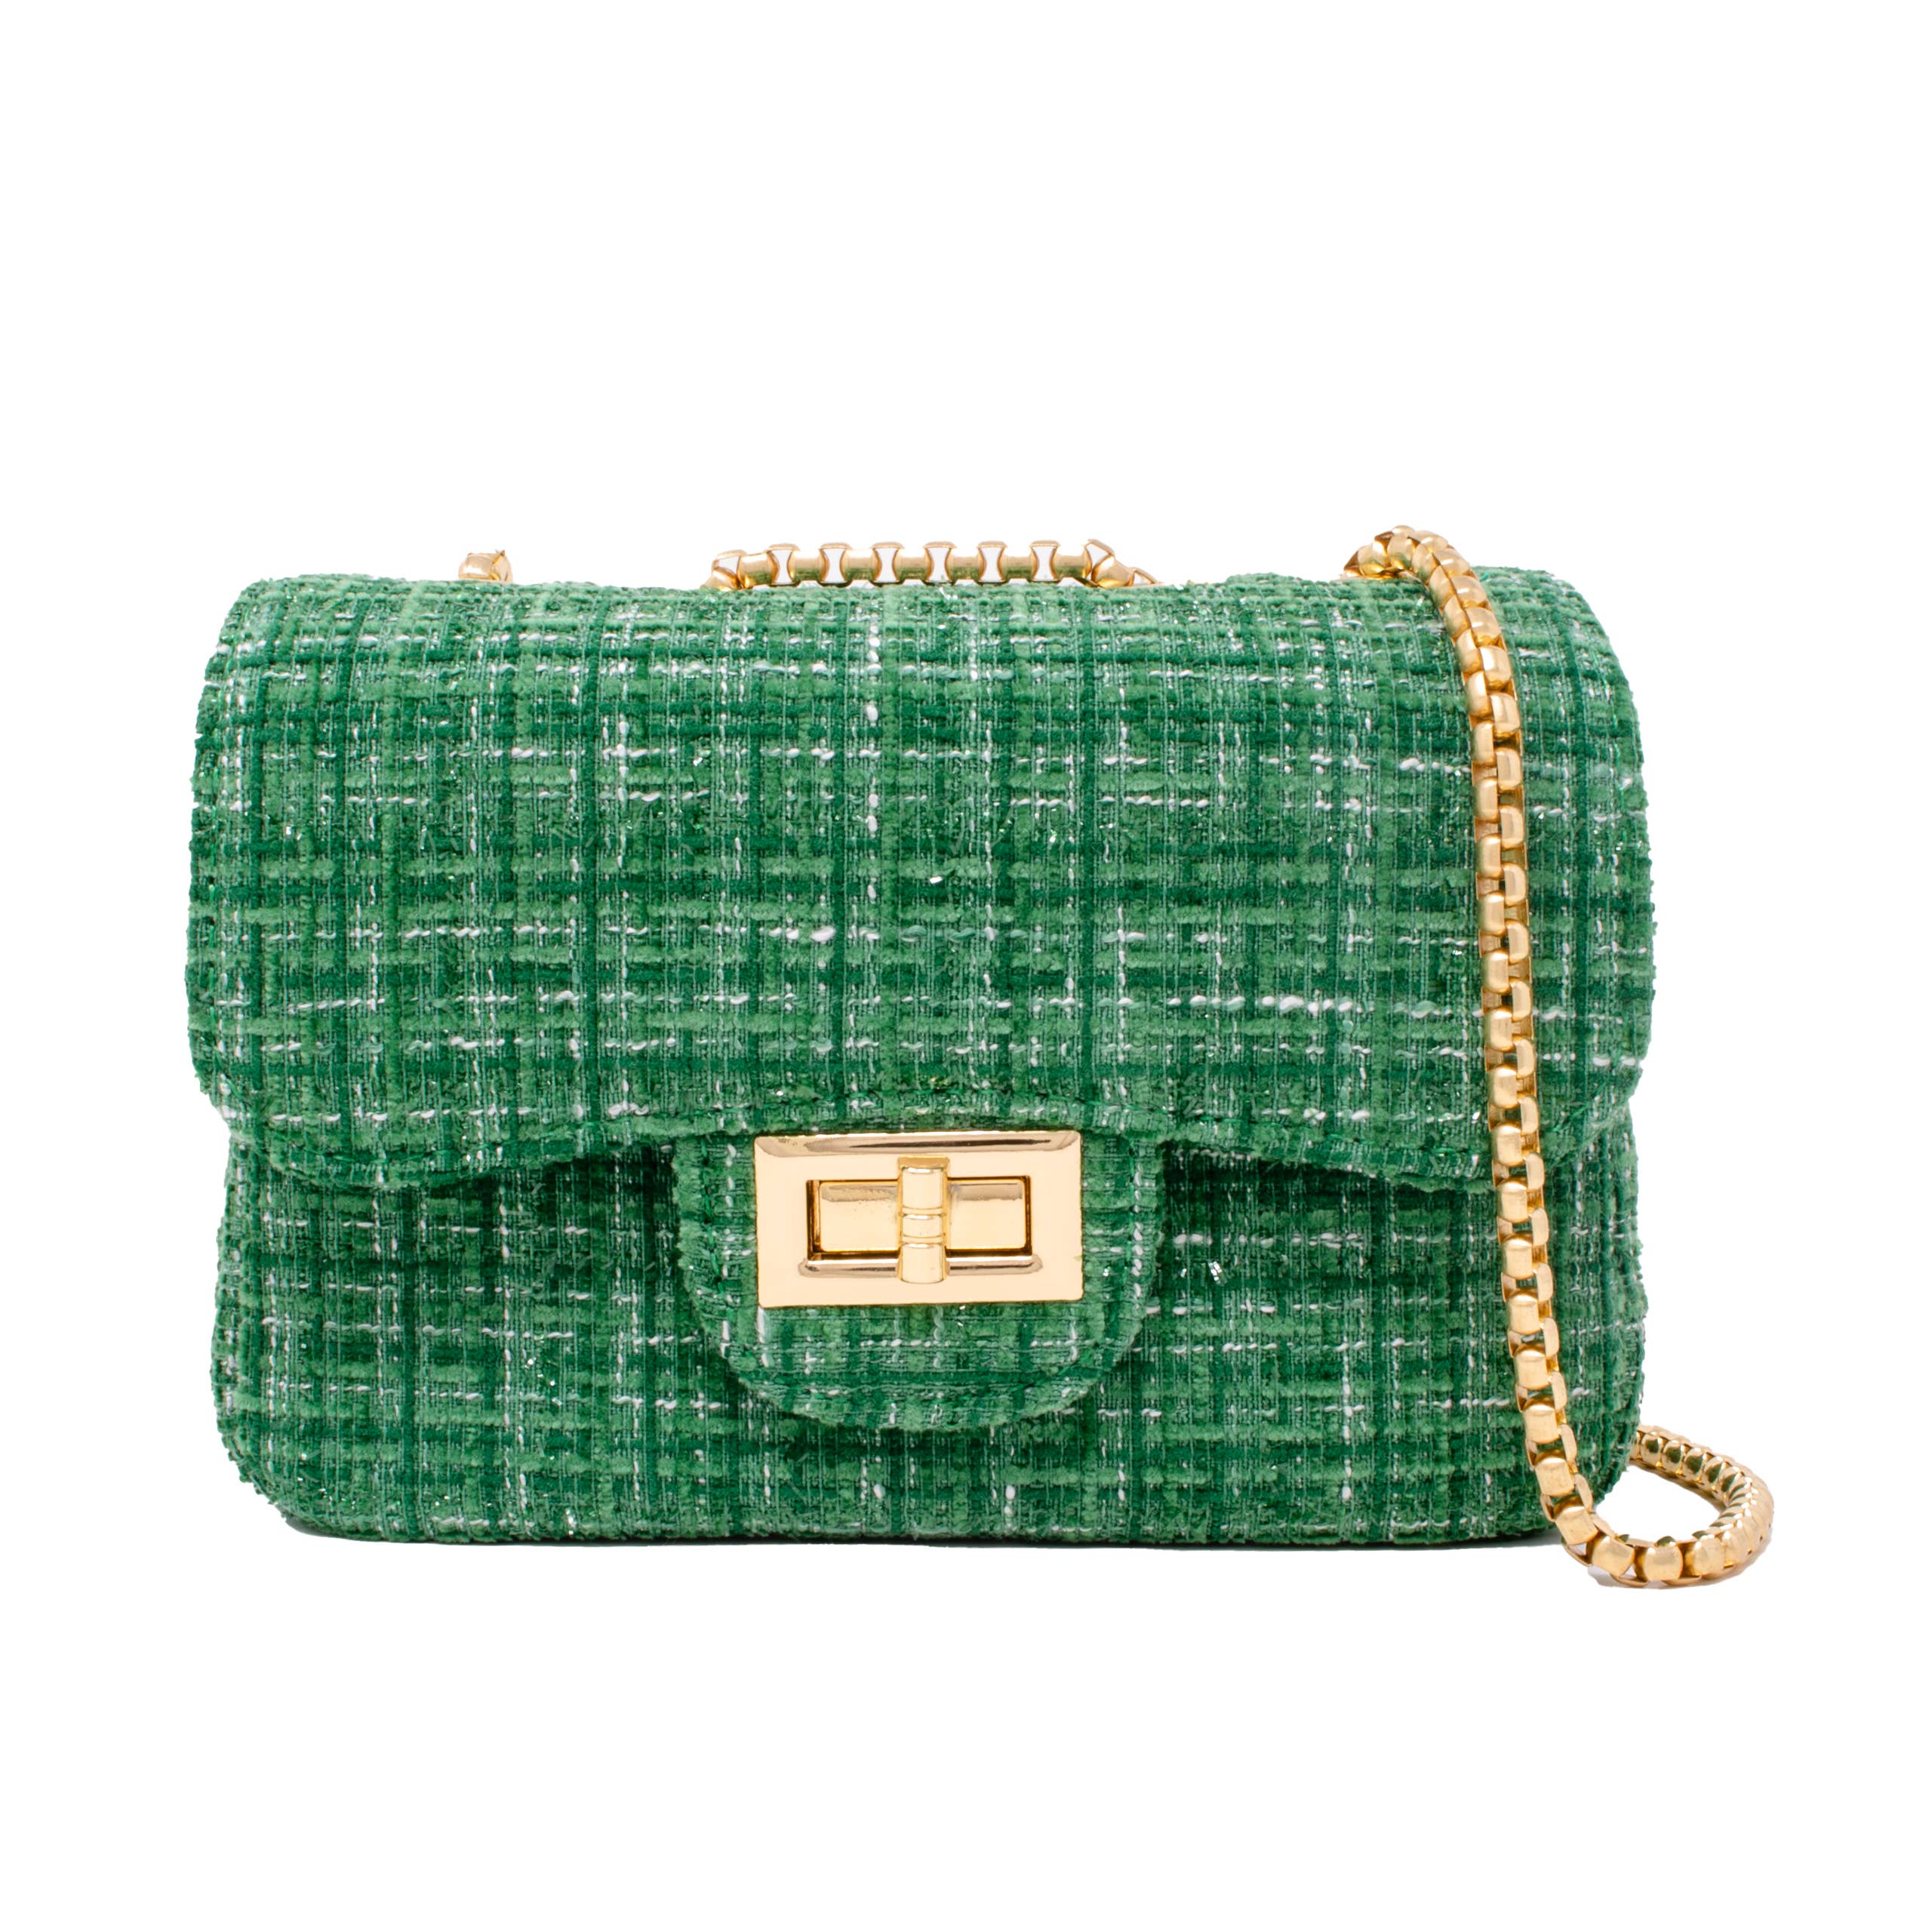 Green Classic Large Tweed Handbag